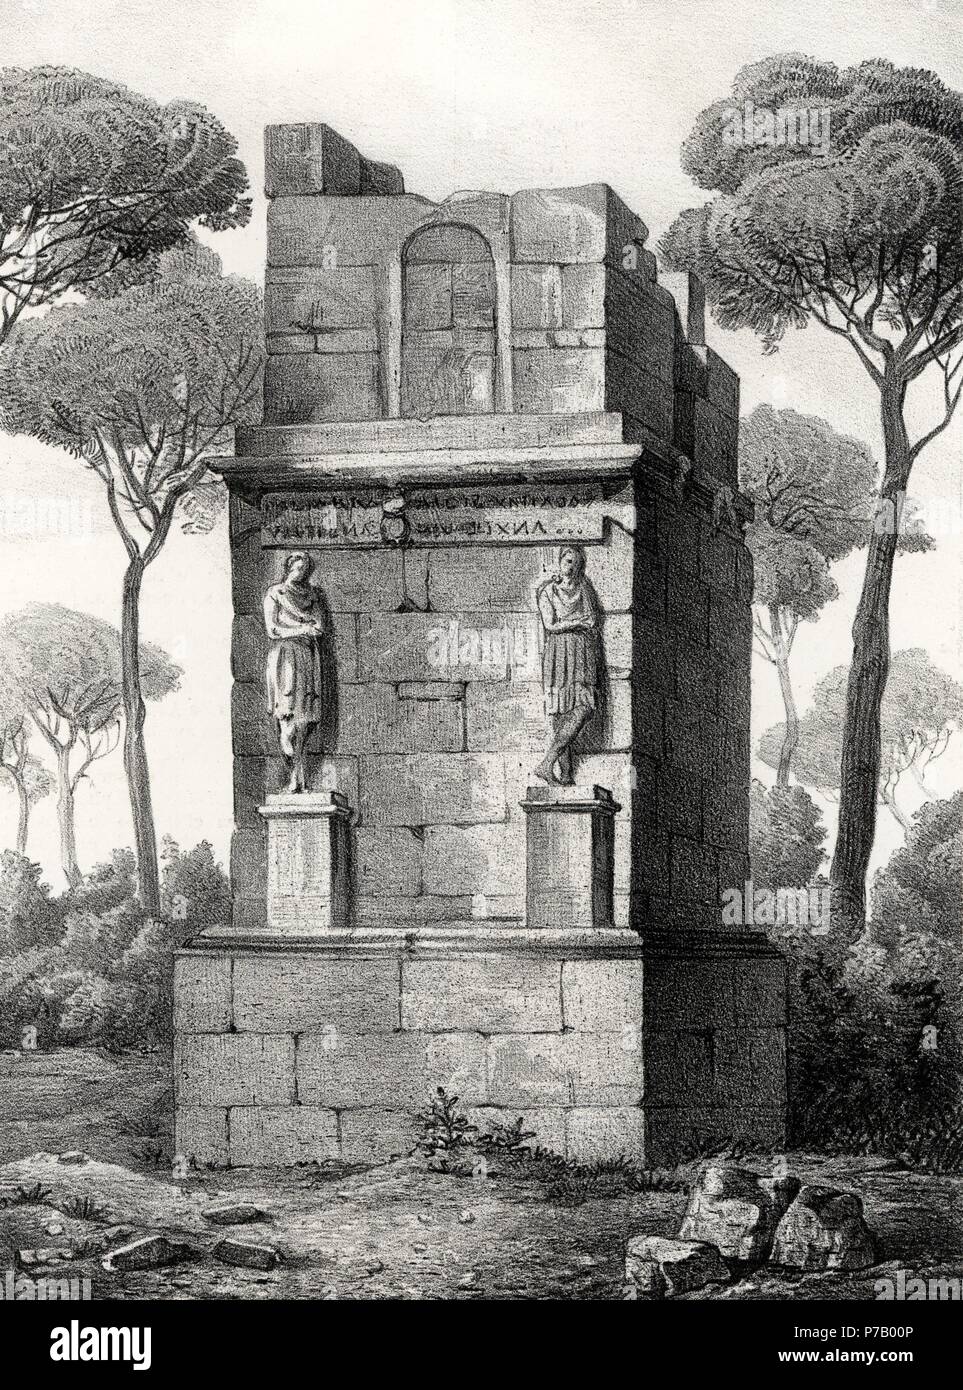 Historia. Torre de los Escipiones, monumento funerario erigido en Tarragona a mediados del siglo I. Grabado de 1871. Stock Photo